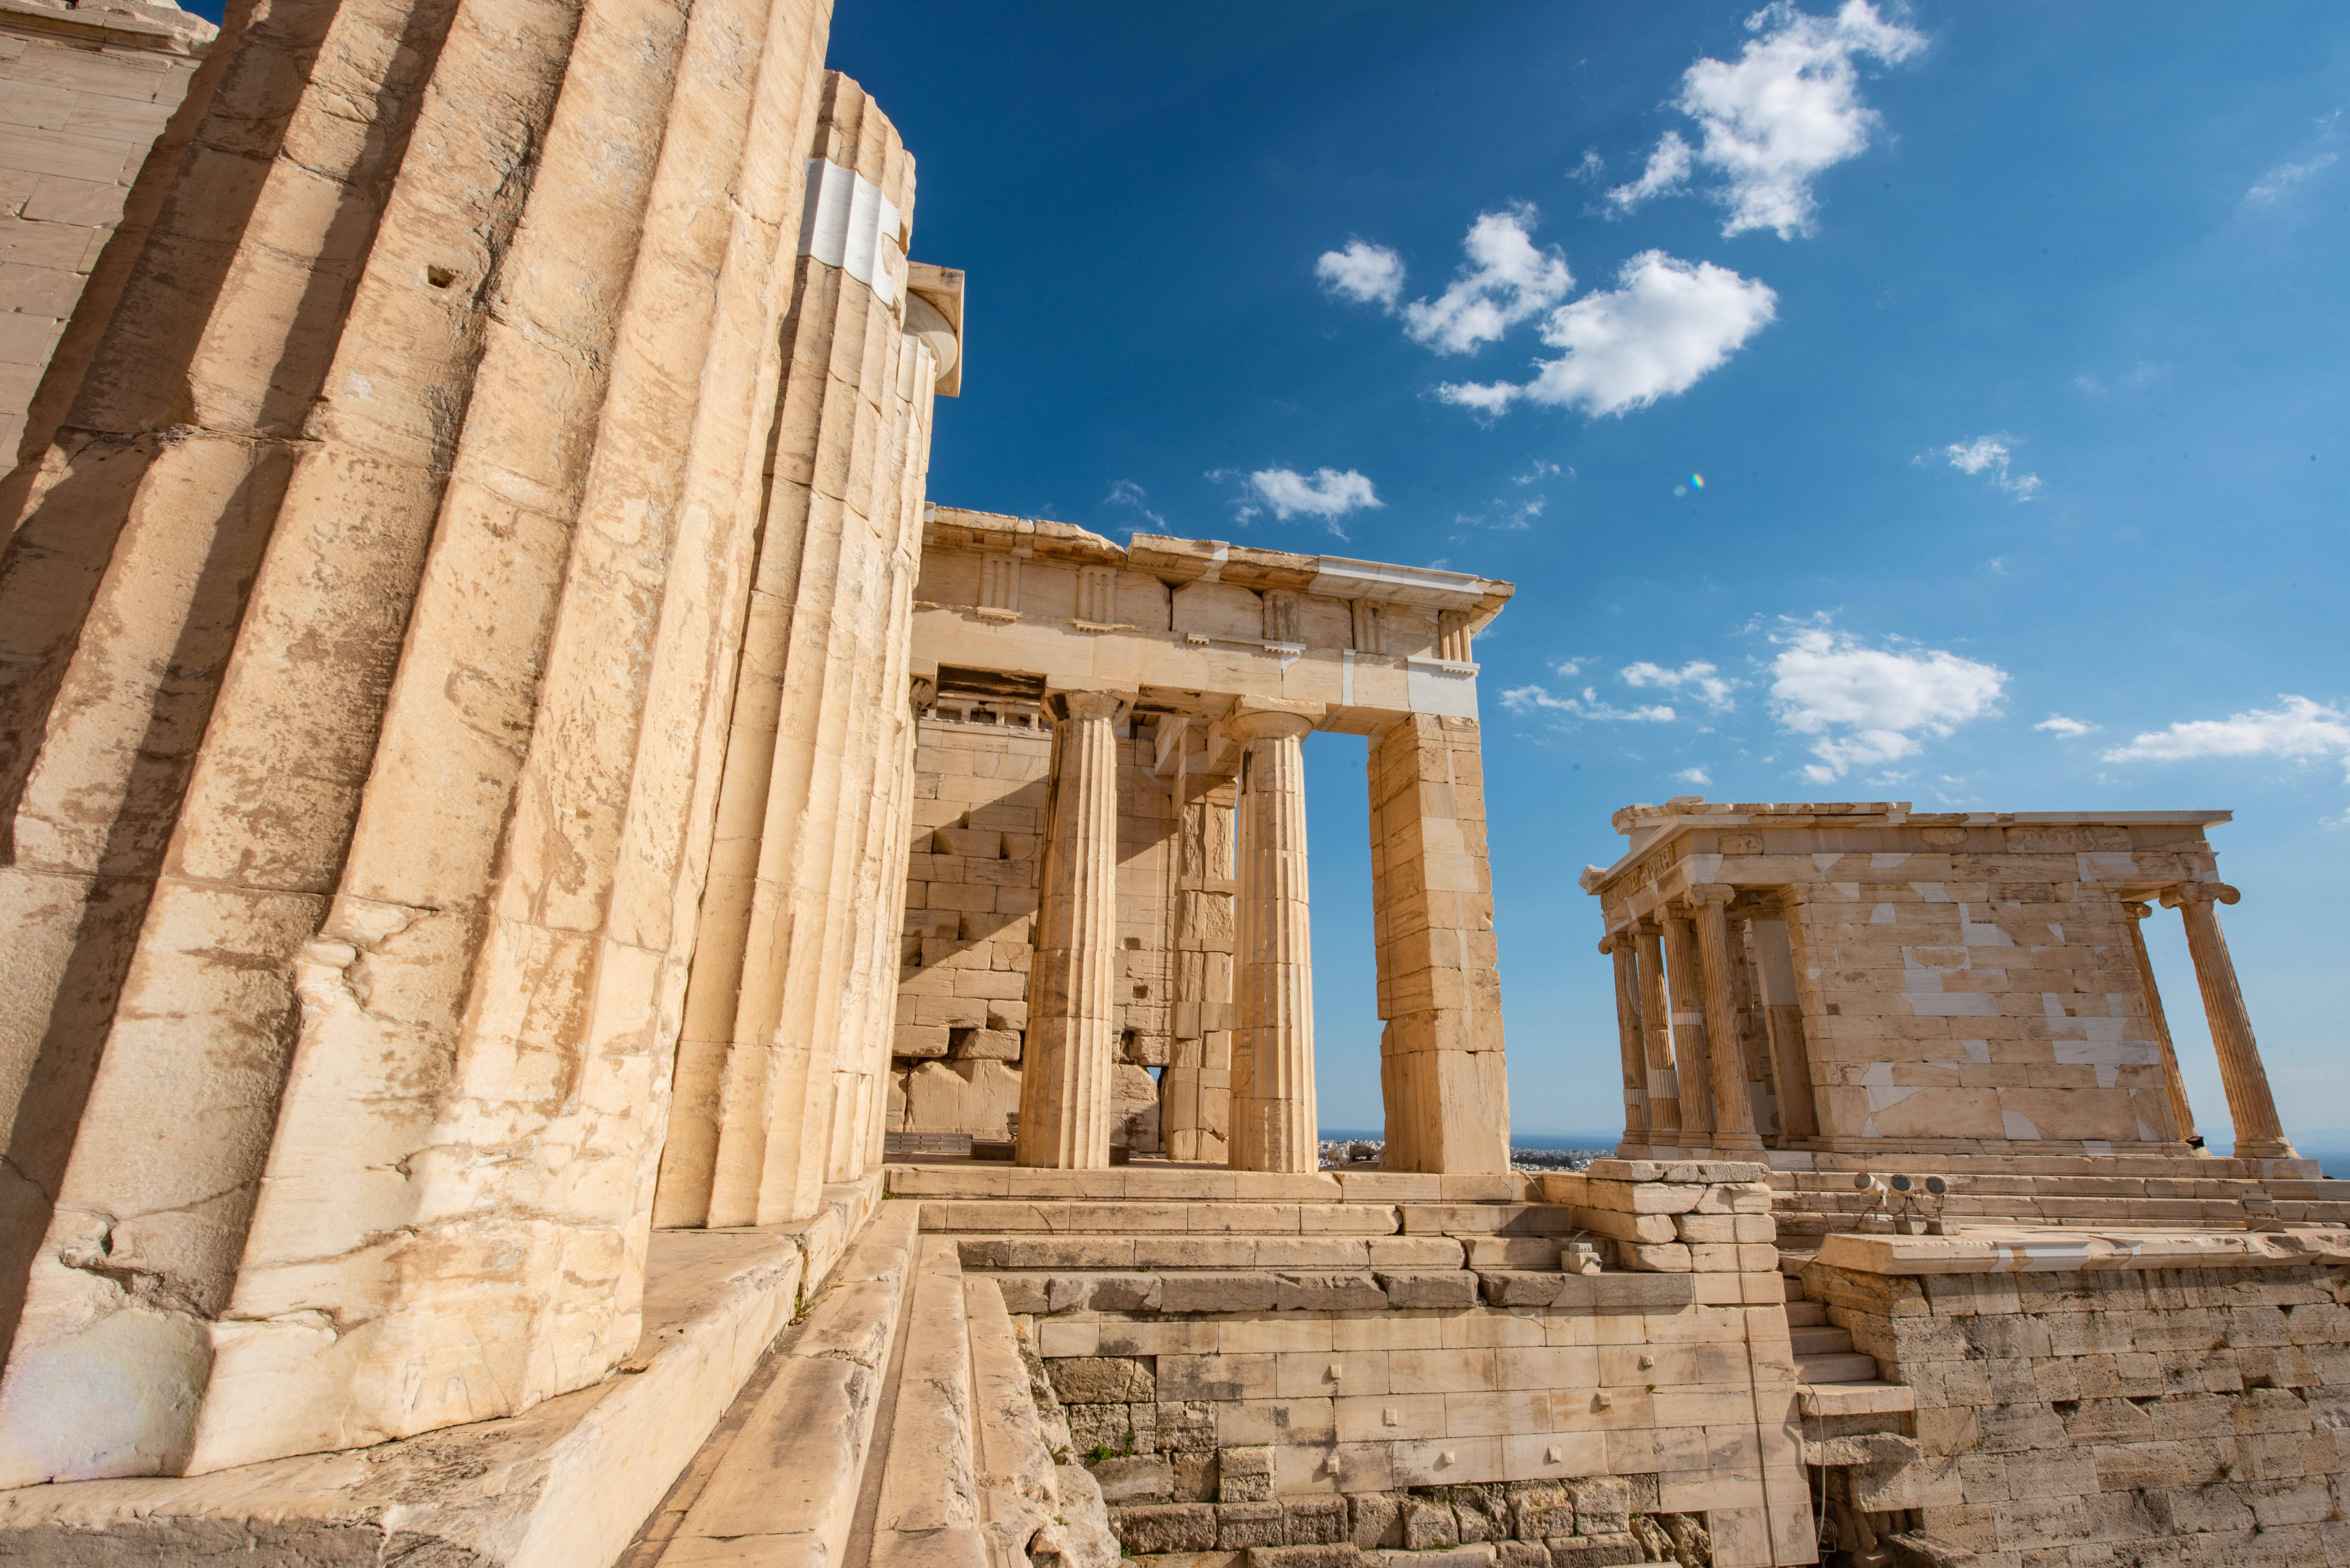 据说始建于公元前580年,集古希腊建筑与雕刻艺术之大成